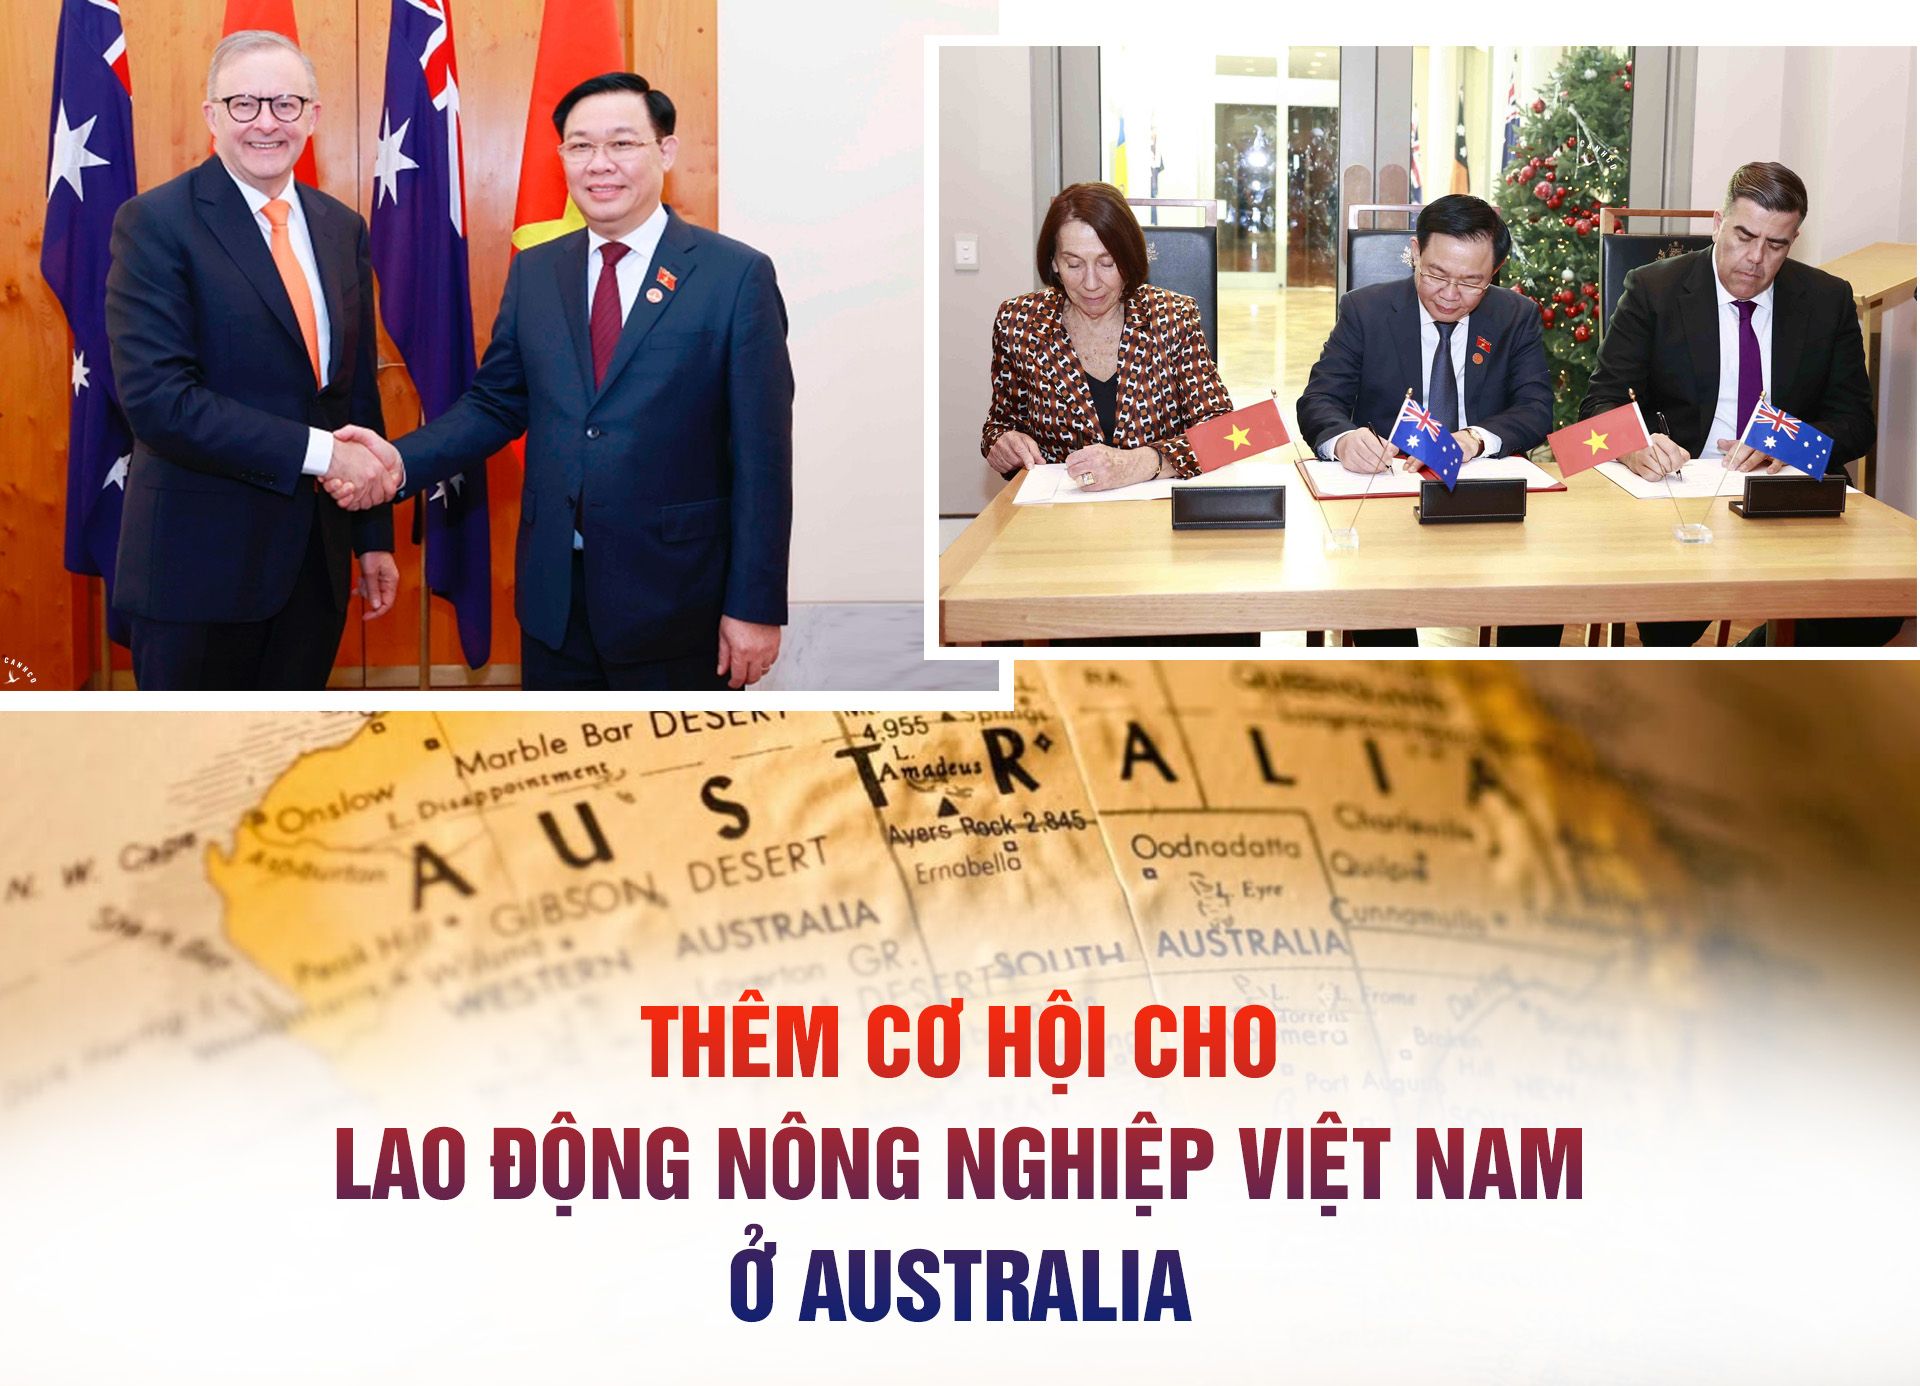 Thêm cơ hội cho lao động nông nghiệp Việt Nam ở Australia